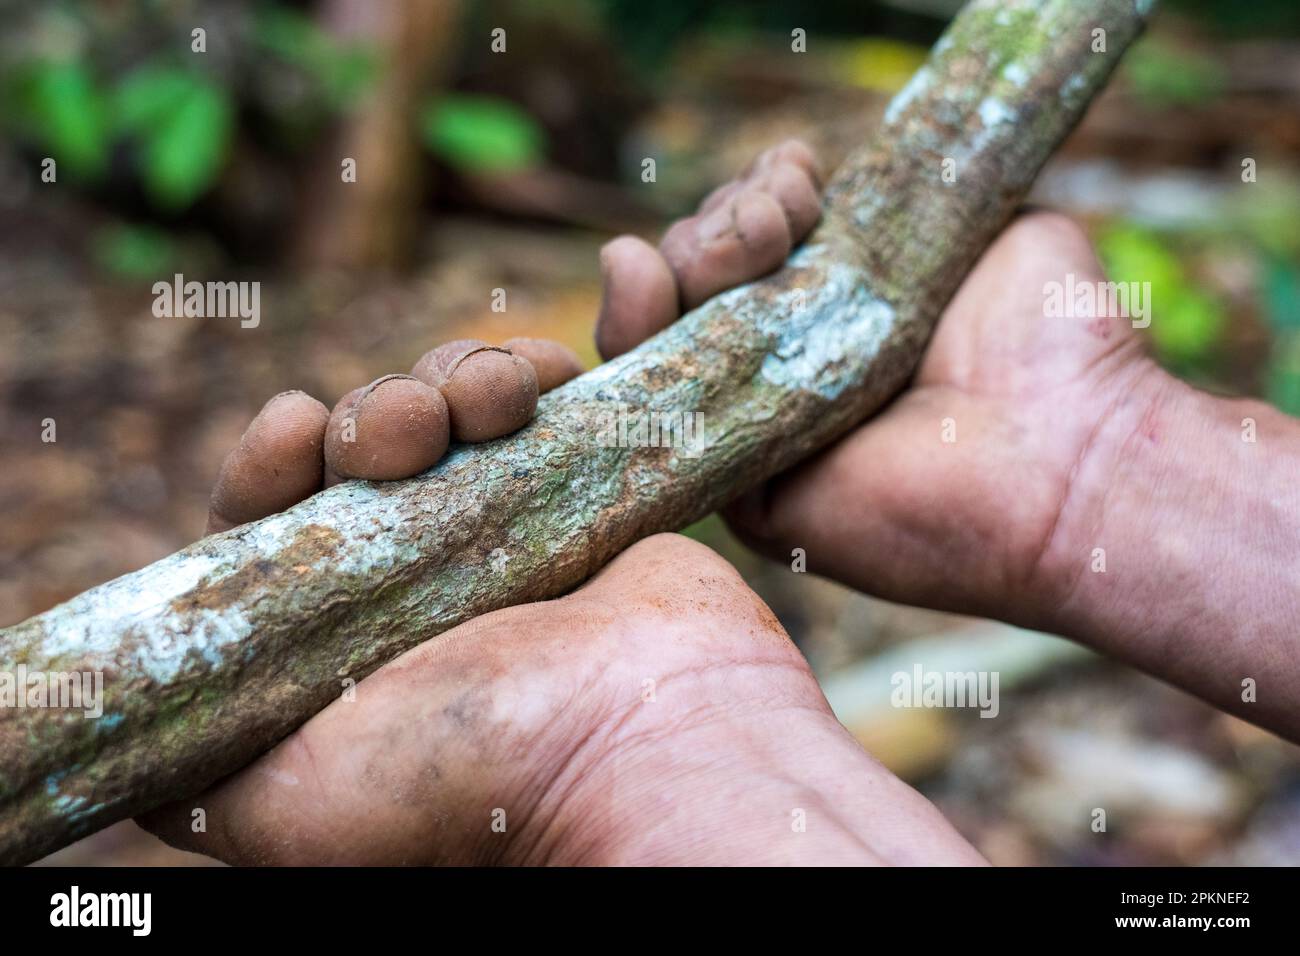 L'écorce d'ayahuasca et les feuilles (Banisteriopsis caapi) sont déstructurées bouillies et distillées pour une utilisation dans la pratique sacrée et rituelle dans le bassin de l'Amazone Banque D'Images